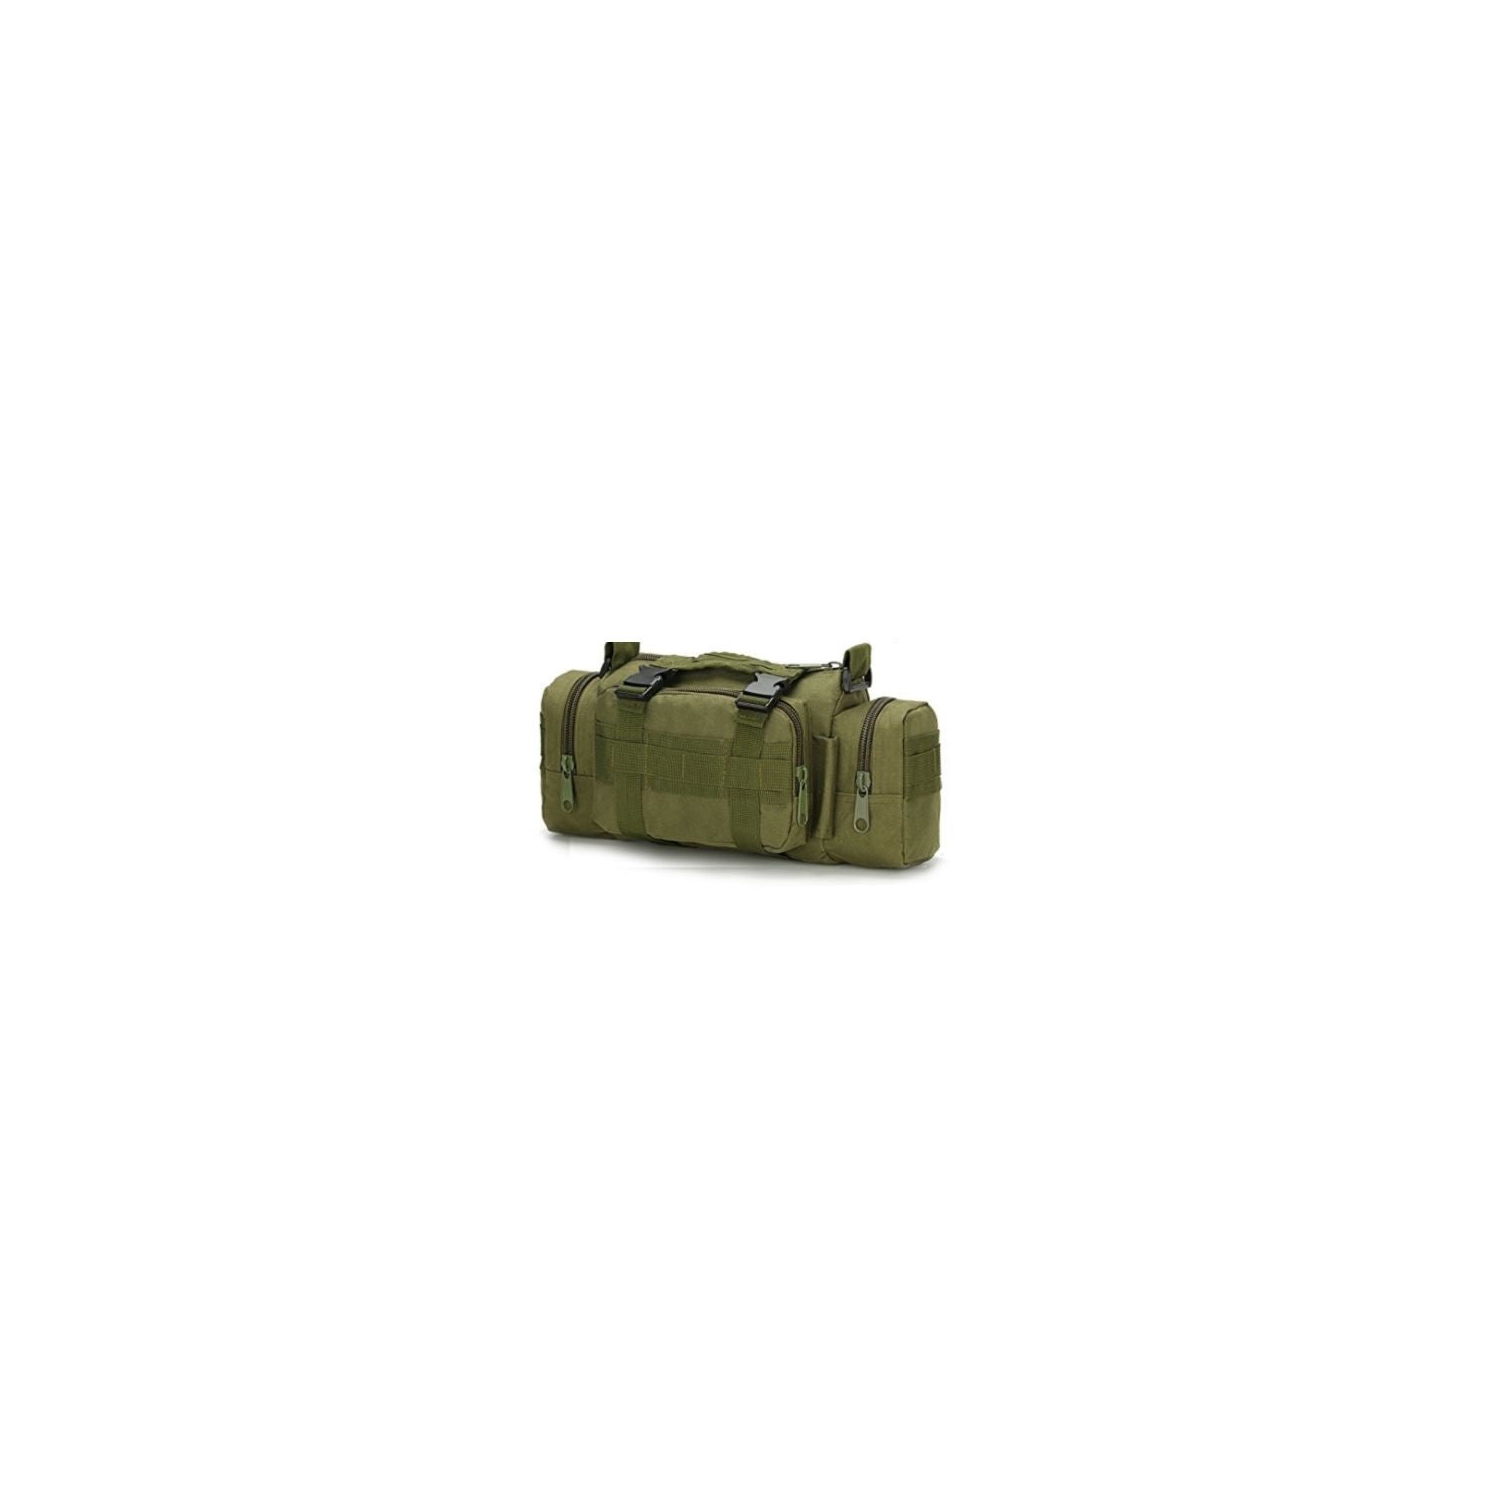 FAMI Tactical Assault Pack Military Duffel Waist Bag Tactical Chest Bag